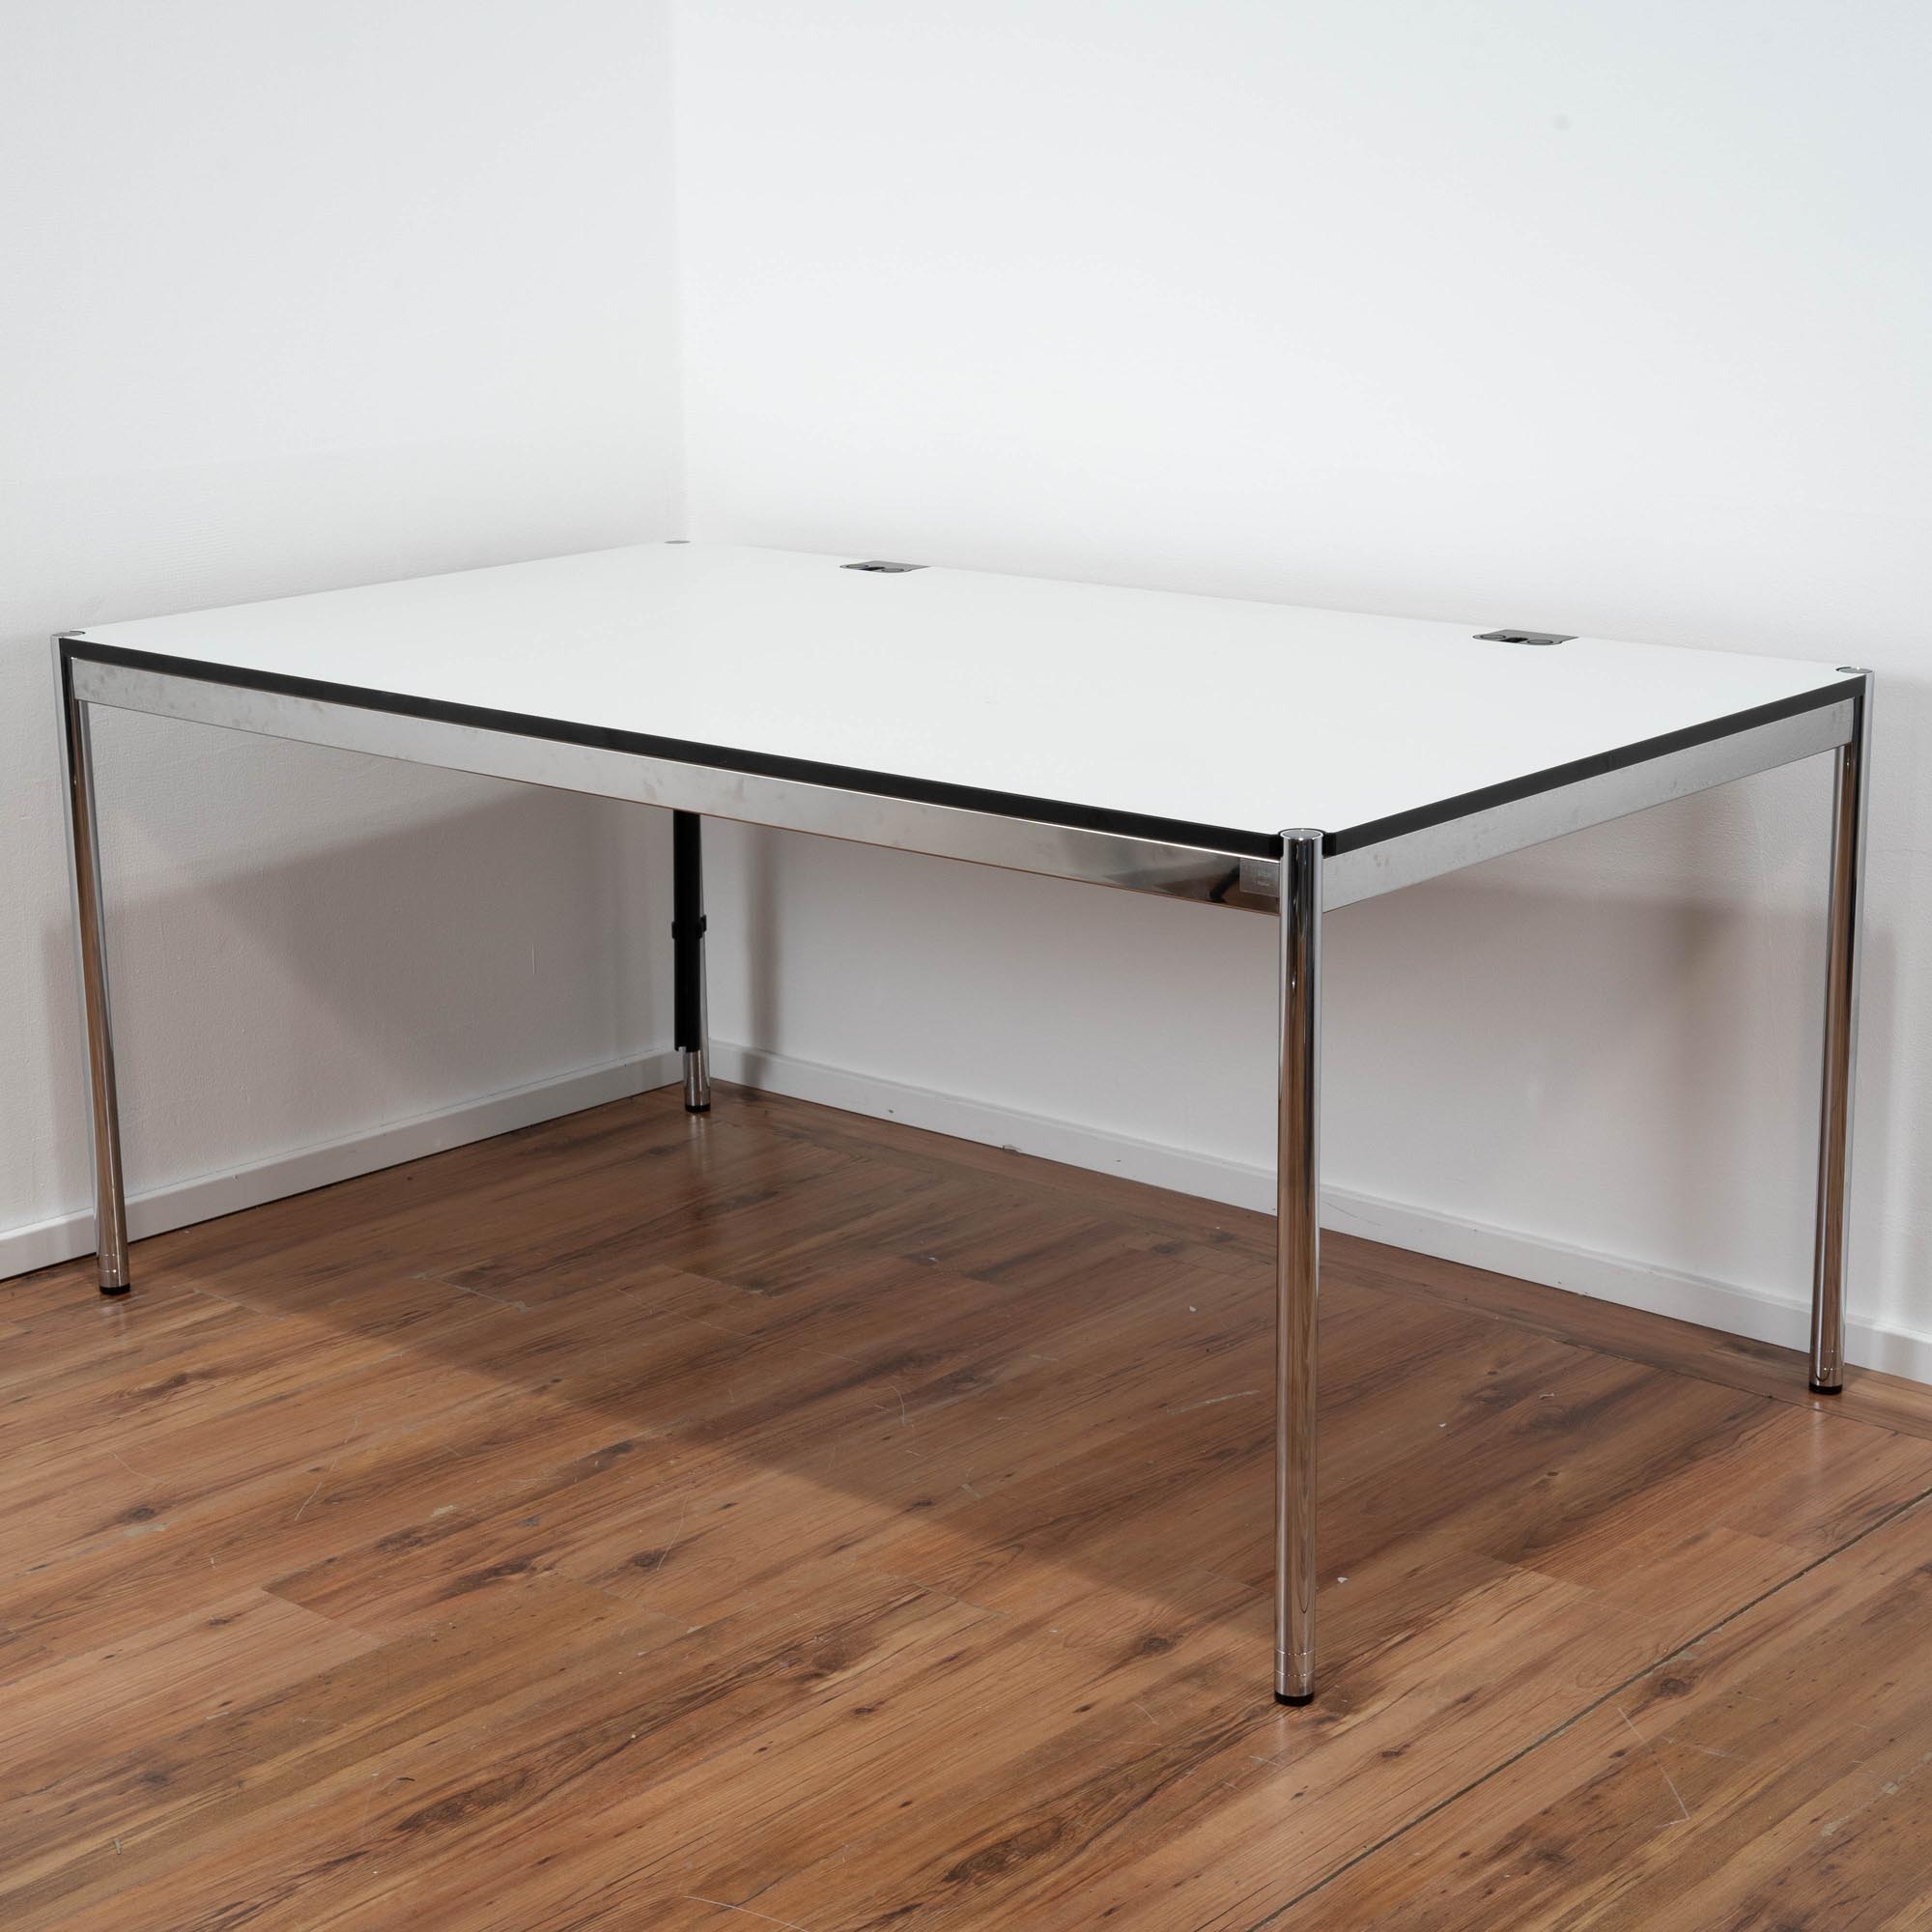 USM Haller Schreibtisch "Advanced" weiß - 200 x 100 cm - Gestell Chrom - Tischplatte ausziehbar 